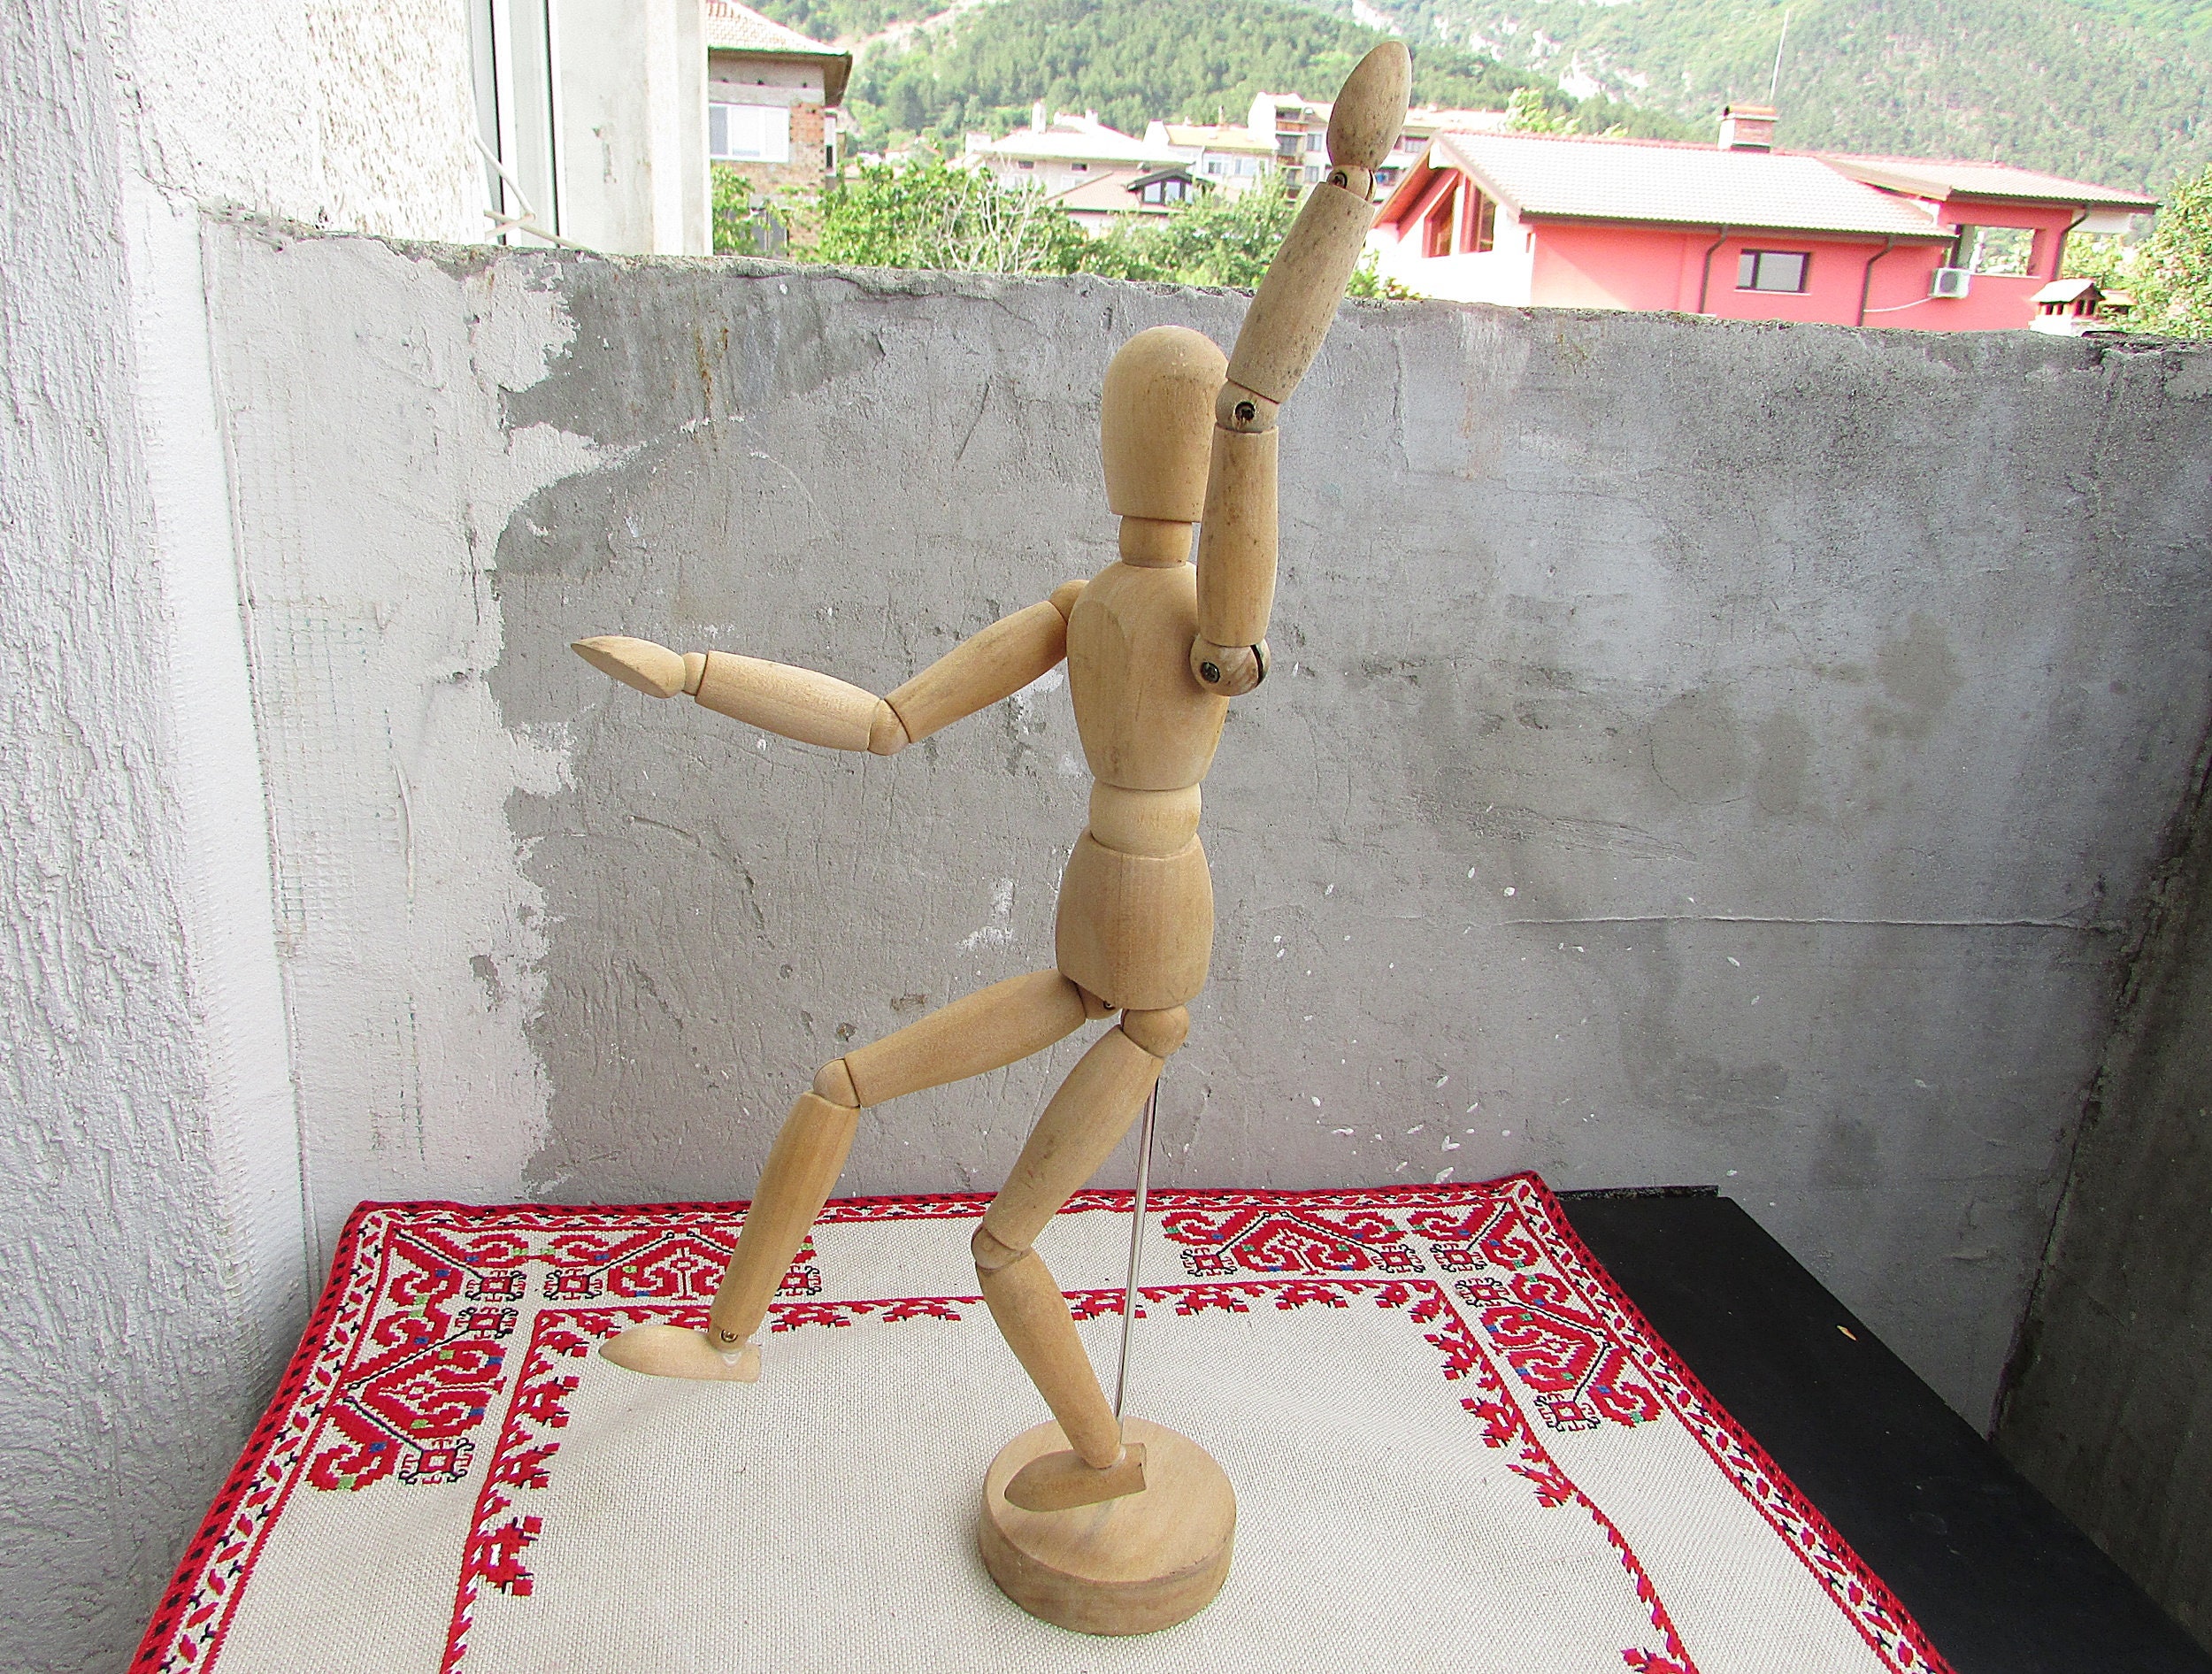 Figurine de mannequin d'artiste articulée – Forme de mannequin magnétique  en bois de 11,4 cm